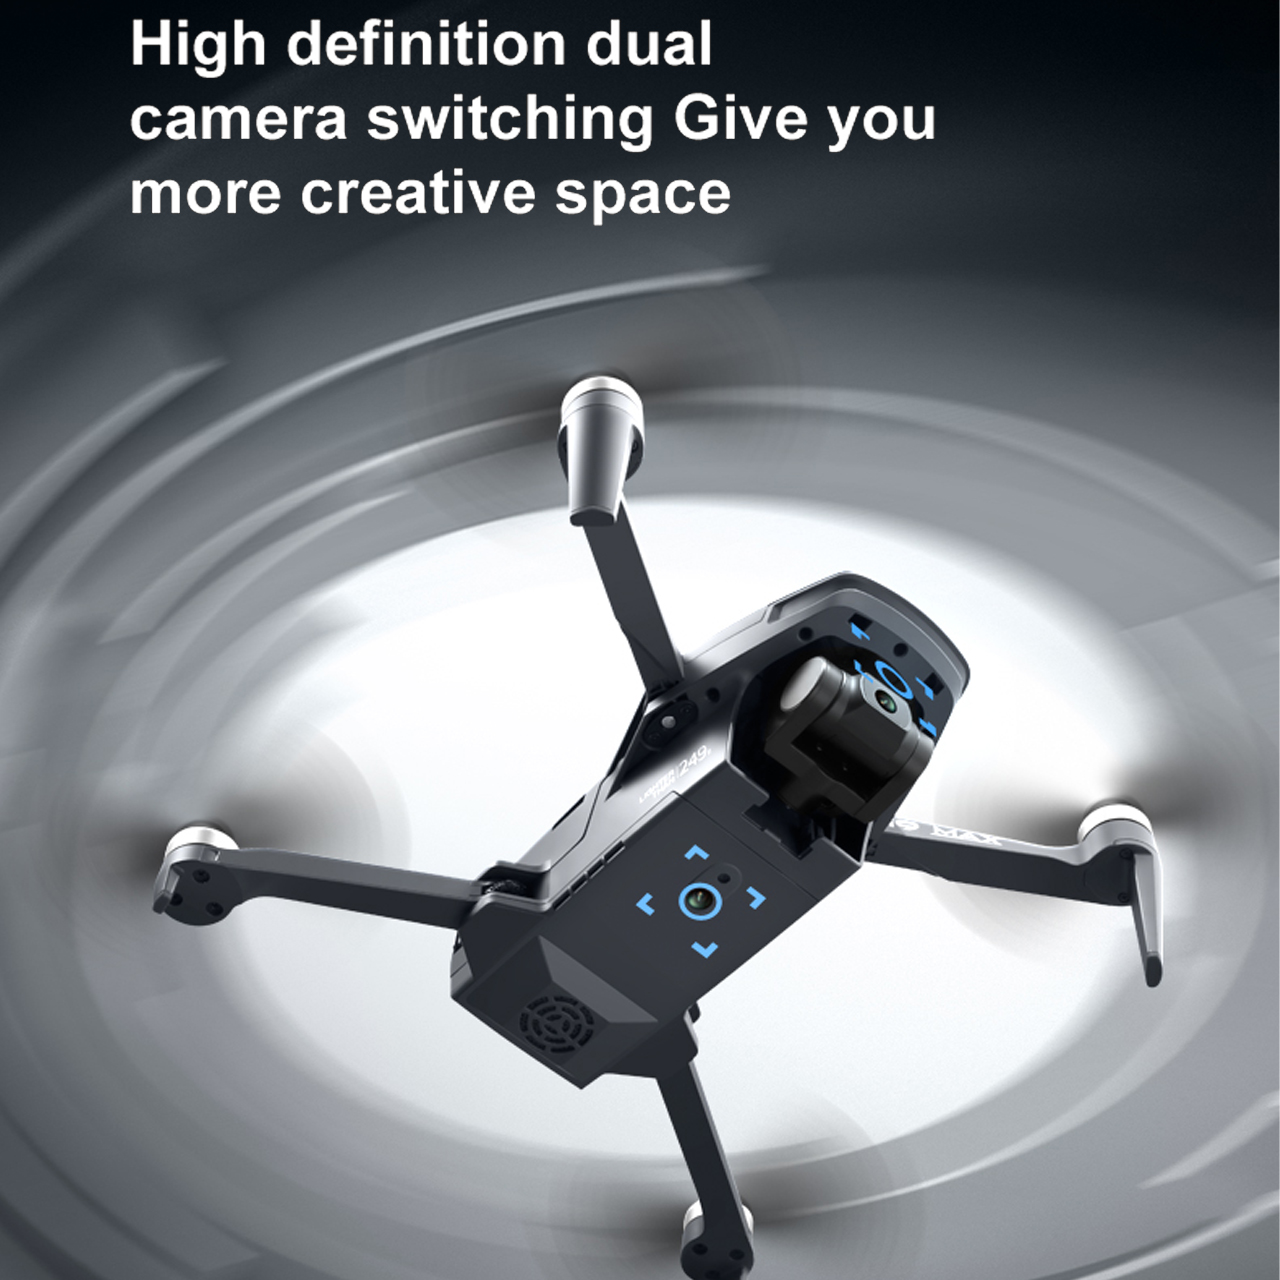 Flycam mini giá rẻ camera 4k i9 Max - Máy bay flycam thế hệ mới gimbal 3 trục, G.P.S, bay 3km, thời gian bay 25 phút, động cơ không chổi than, cảm biến chống va chạm - hàng chính hãng